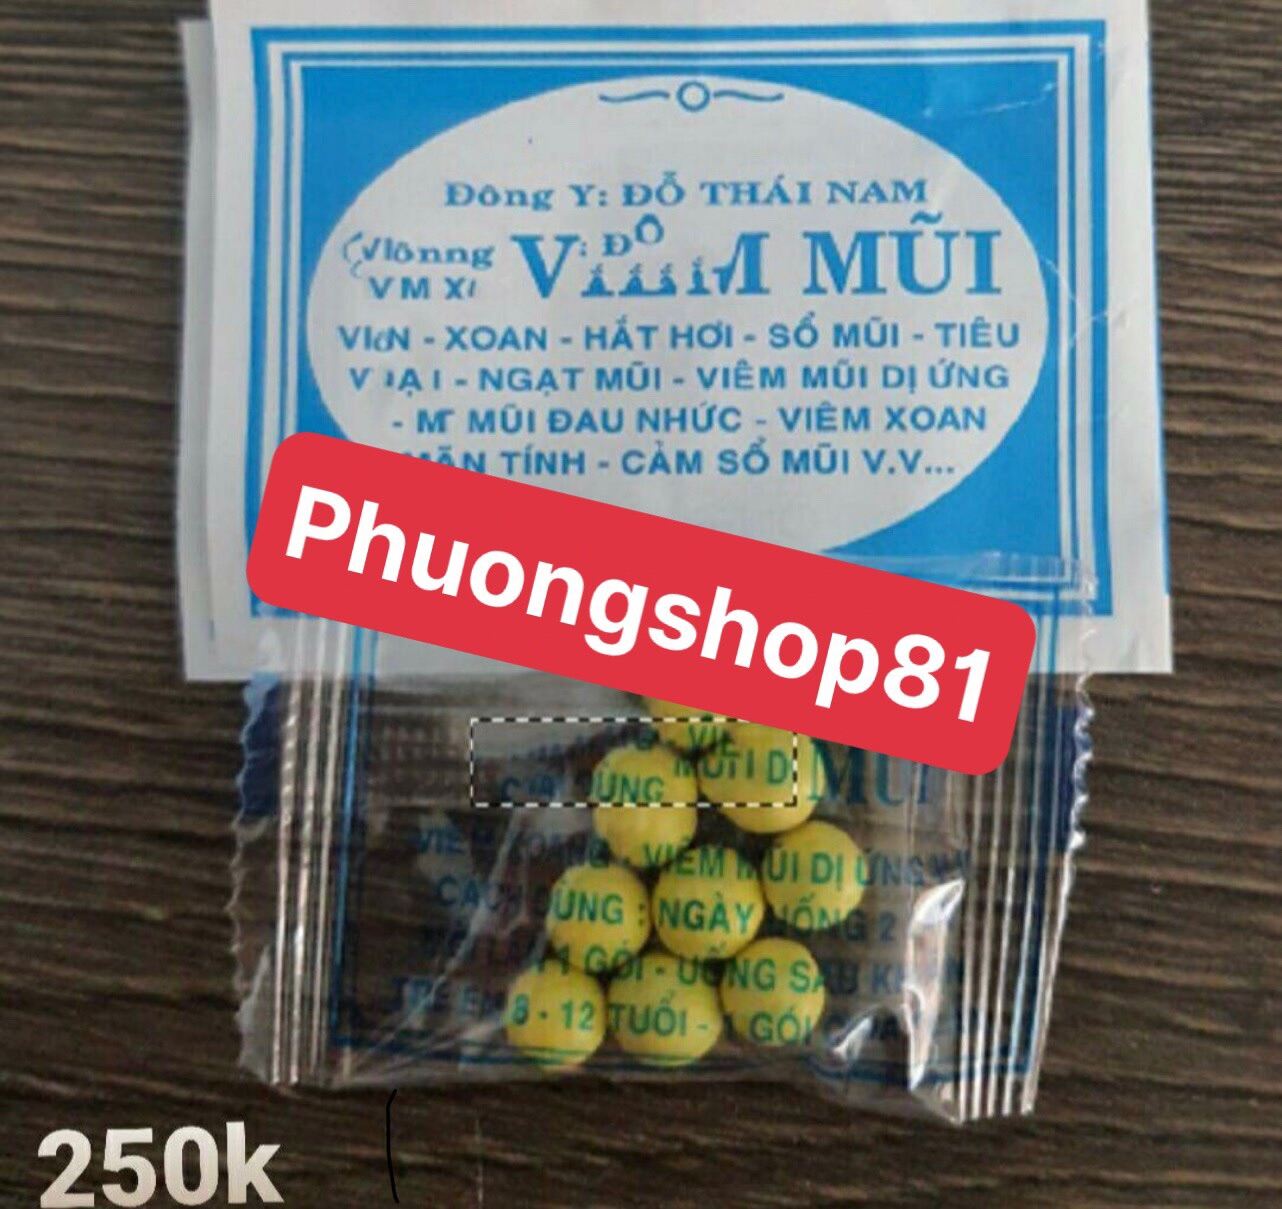 [Phuongshop81] 50 gói viêm mũi Viên đỗ thái nam